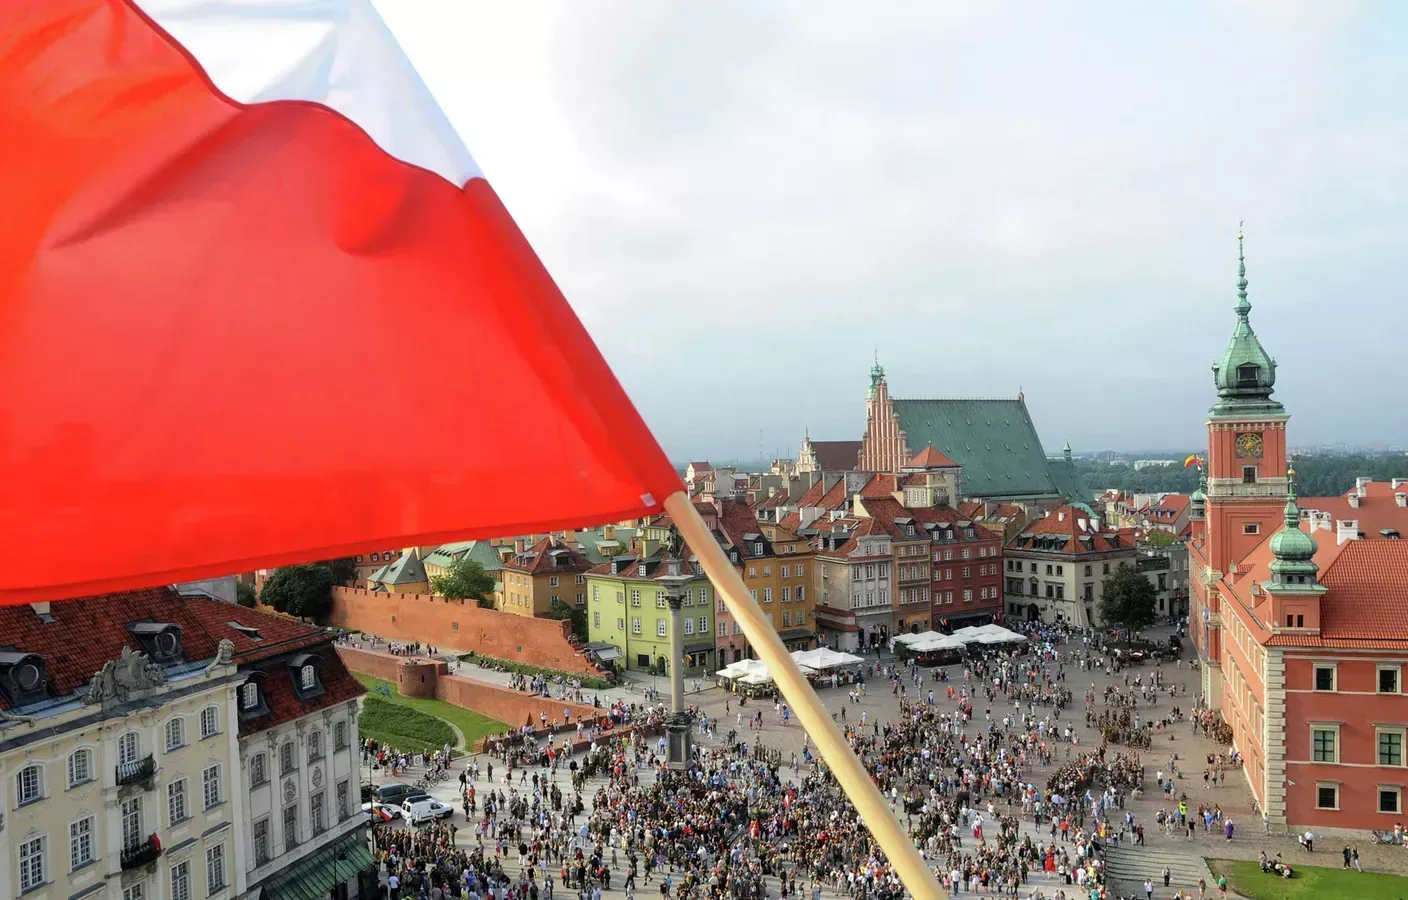 
											
											Полша Украинани тиклаш учун молиявий марказга айланмоқчи
											
											